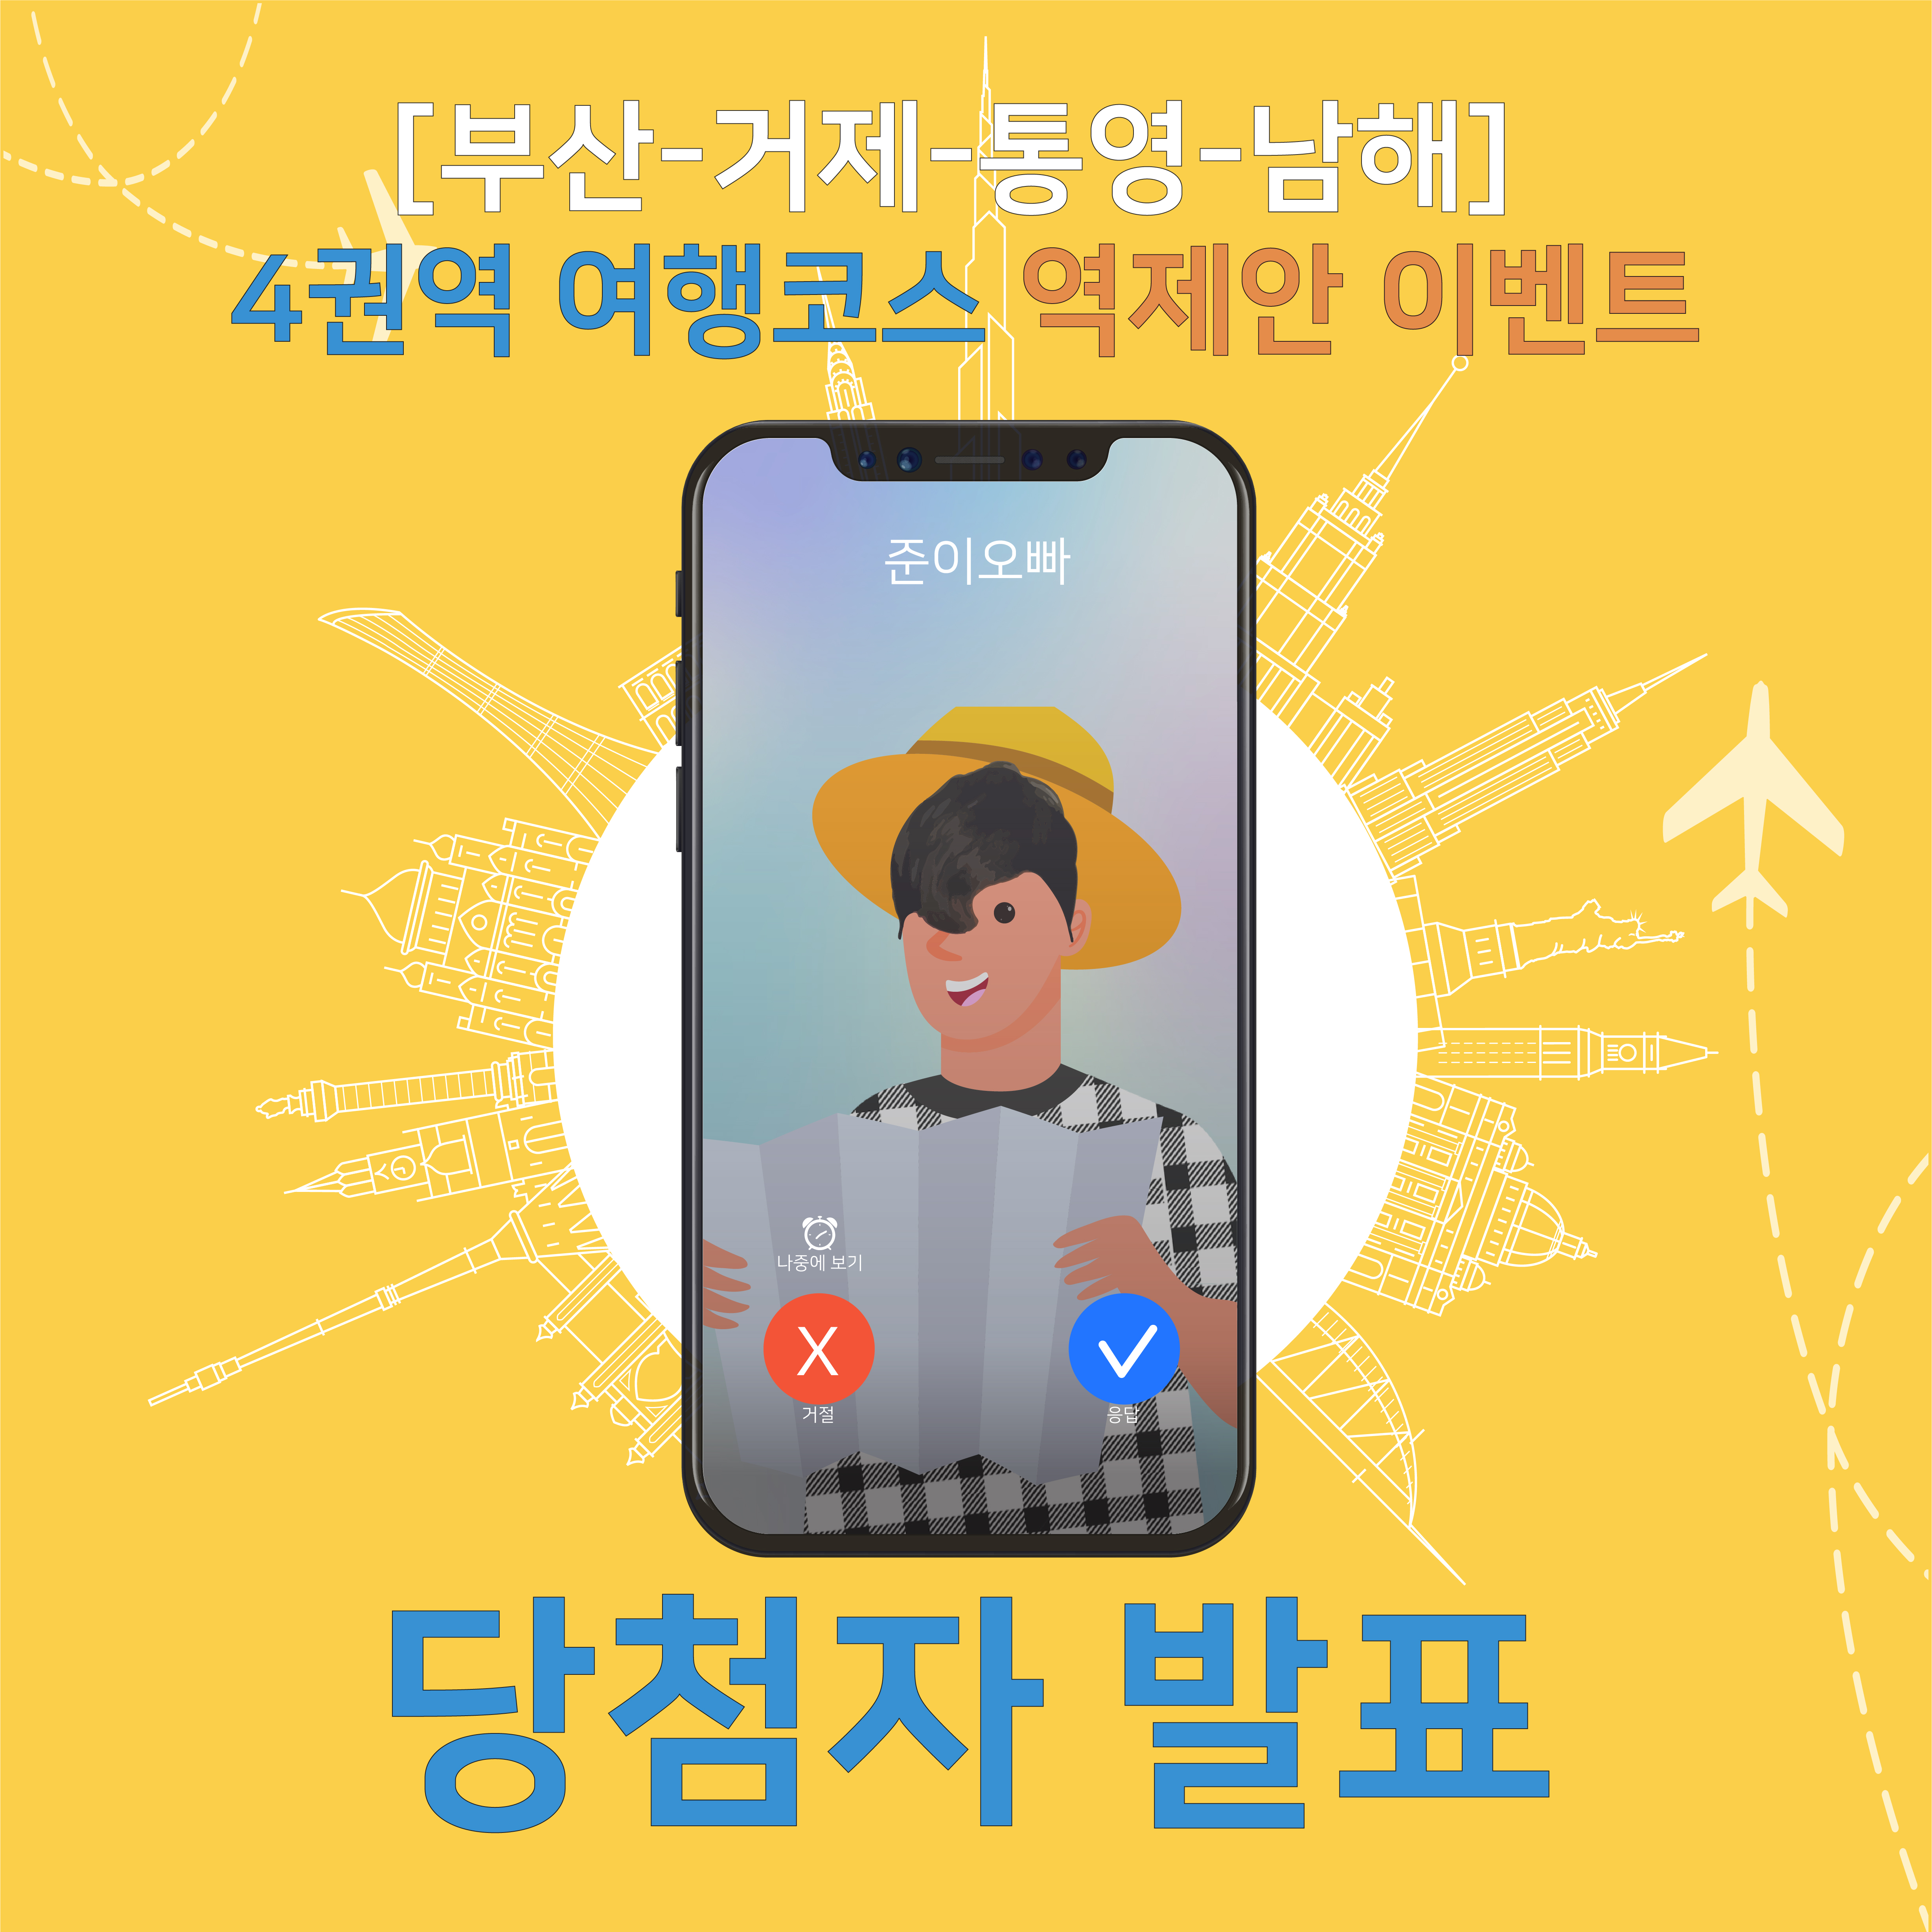 [부산-거제-통영-남해] 4권역 여행코스 역제안 이벤트 당첨자 발표